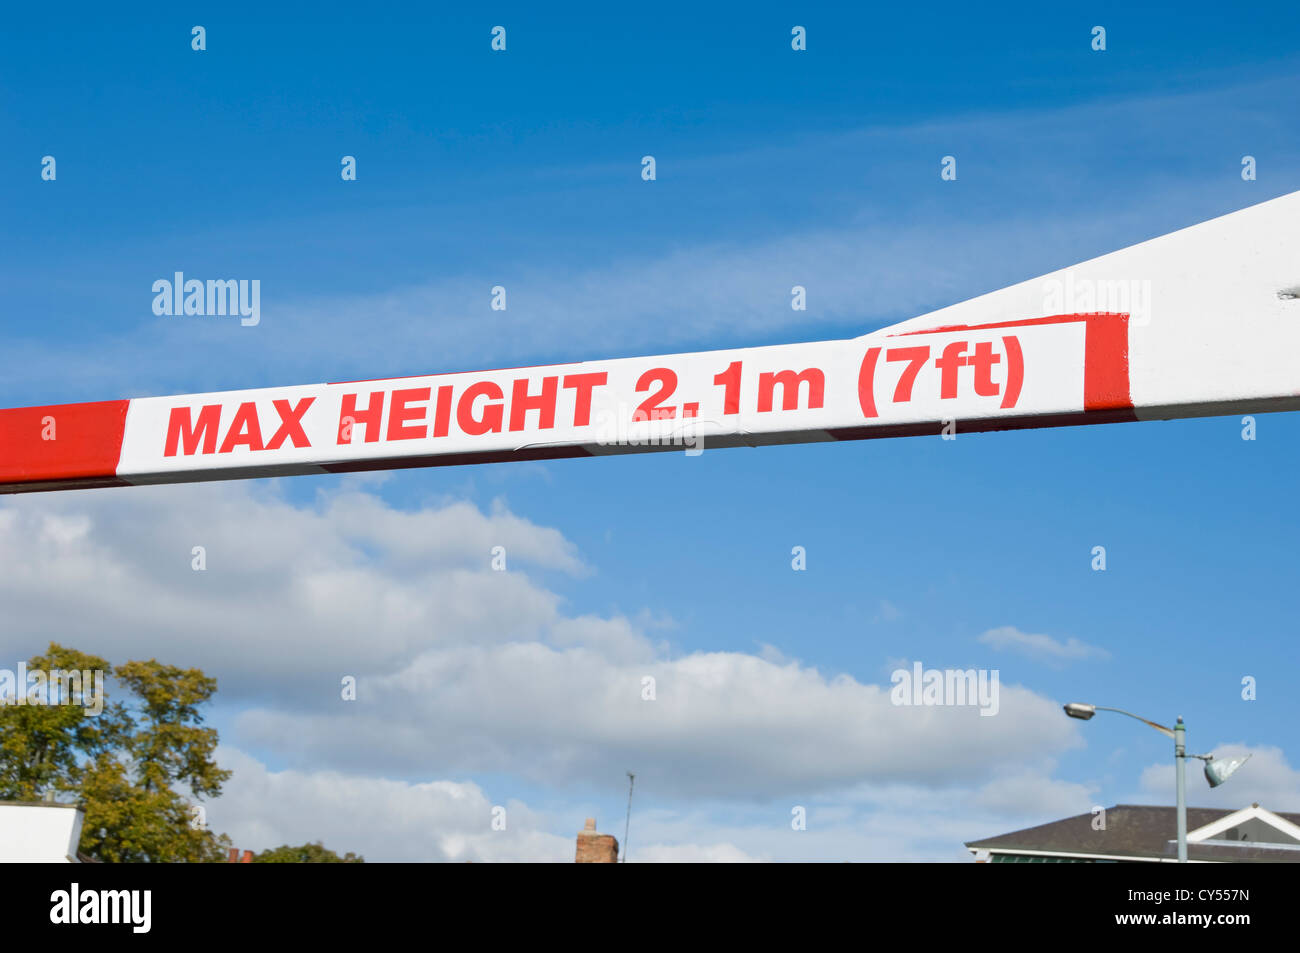 Gros plan du panneau d'avertissement de restriction de hauteur maximale sur la barrière York North Yorkshire Angleterre Royaume-Uni GB Grande-Bretagne Banque D'Images